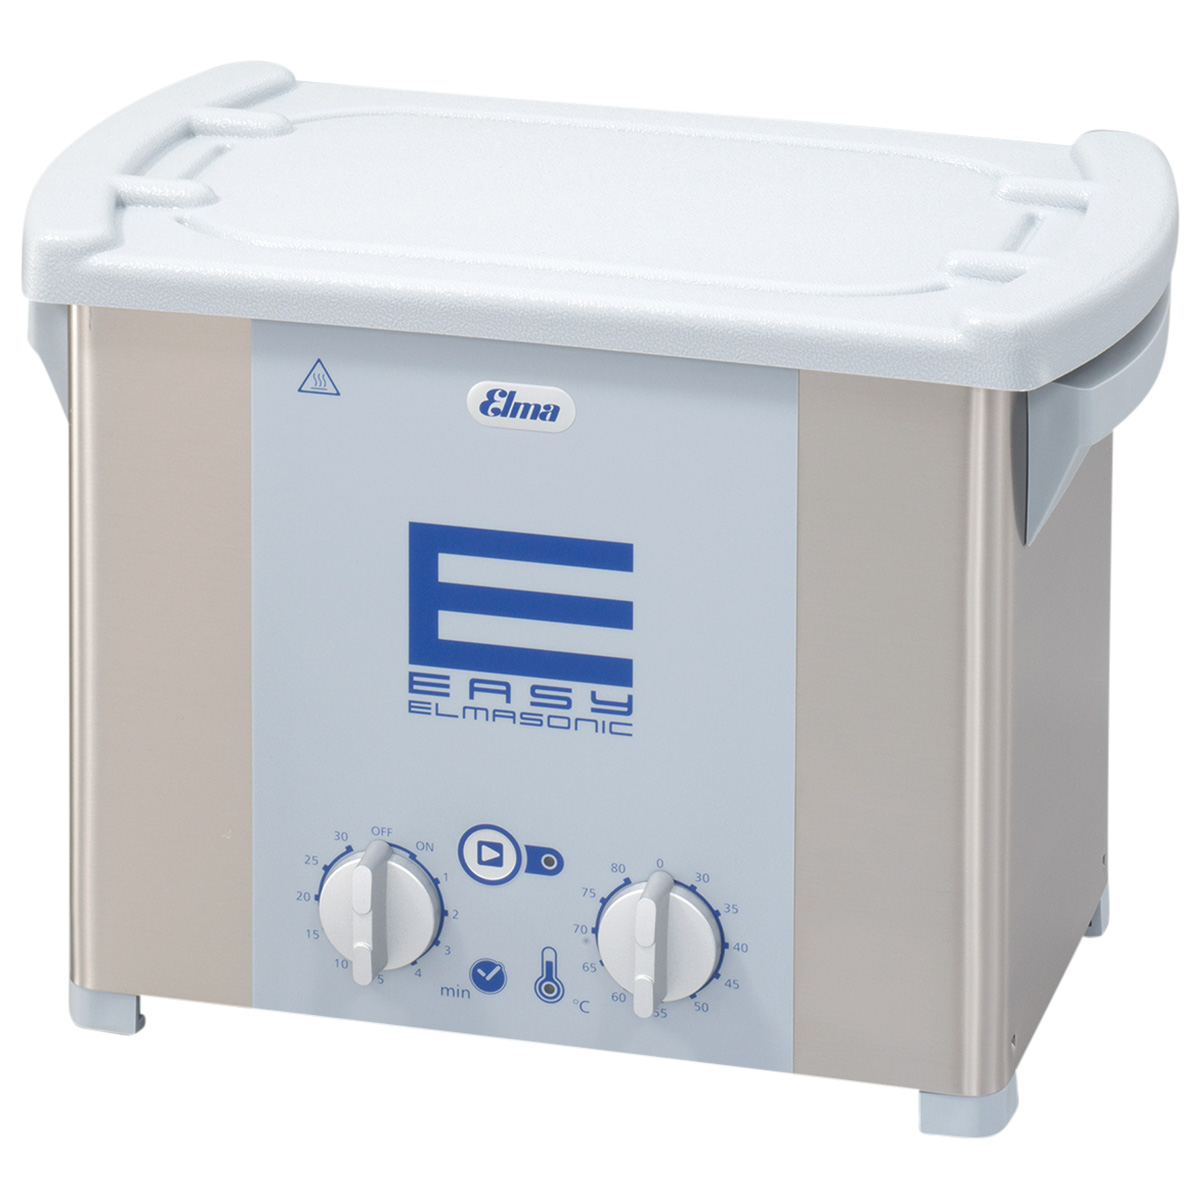 Elmasonic Easy 30H Ultraschallgerät, mit Heizung, 220 - 240 V